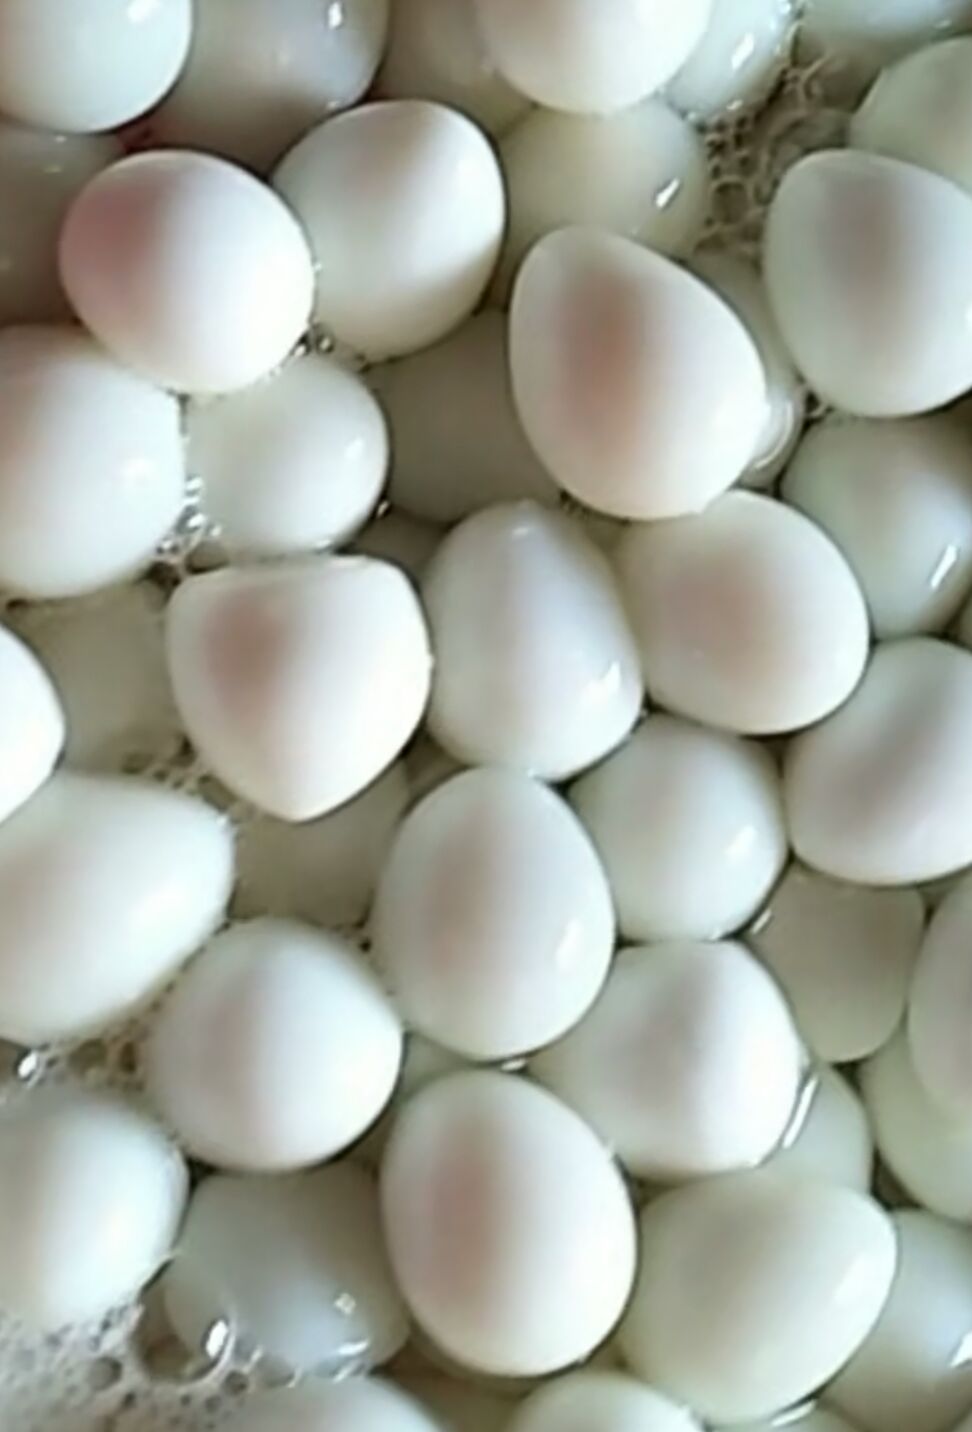 武陟縣鵪鶉蛋  蛋清水蛋營養全面好食材綠色食品零添加